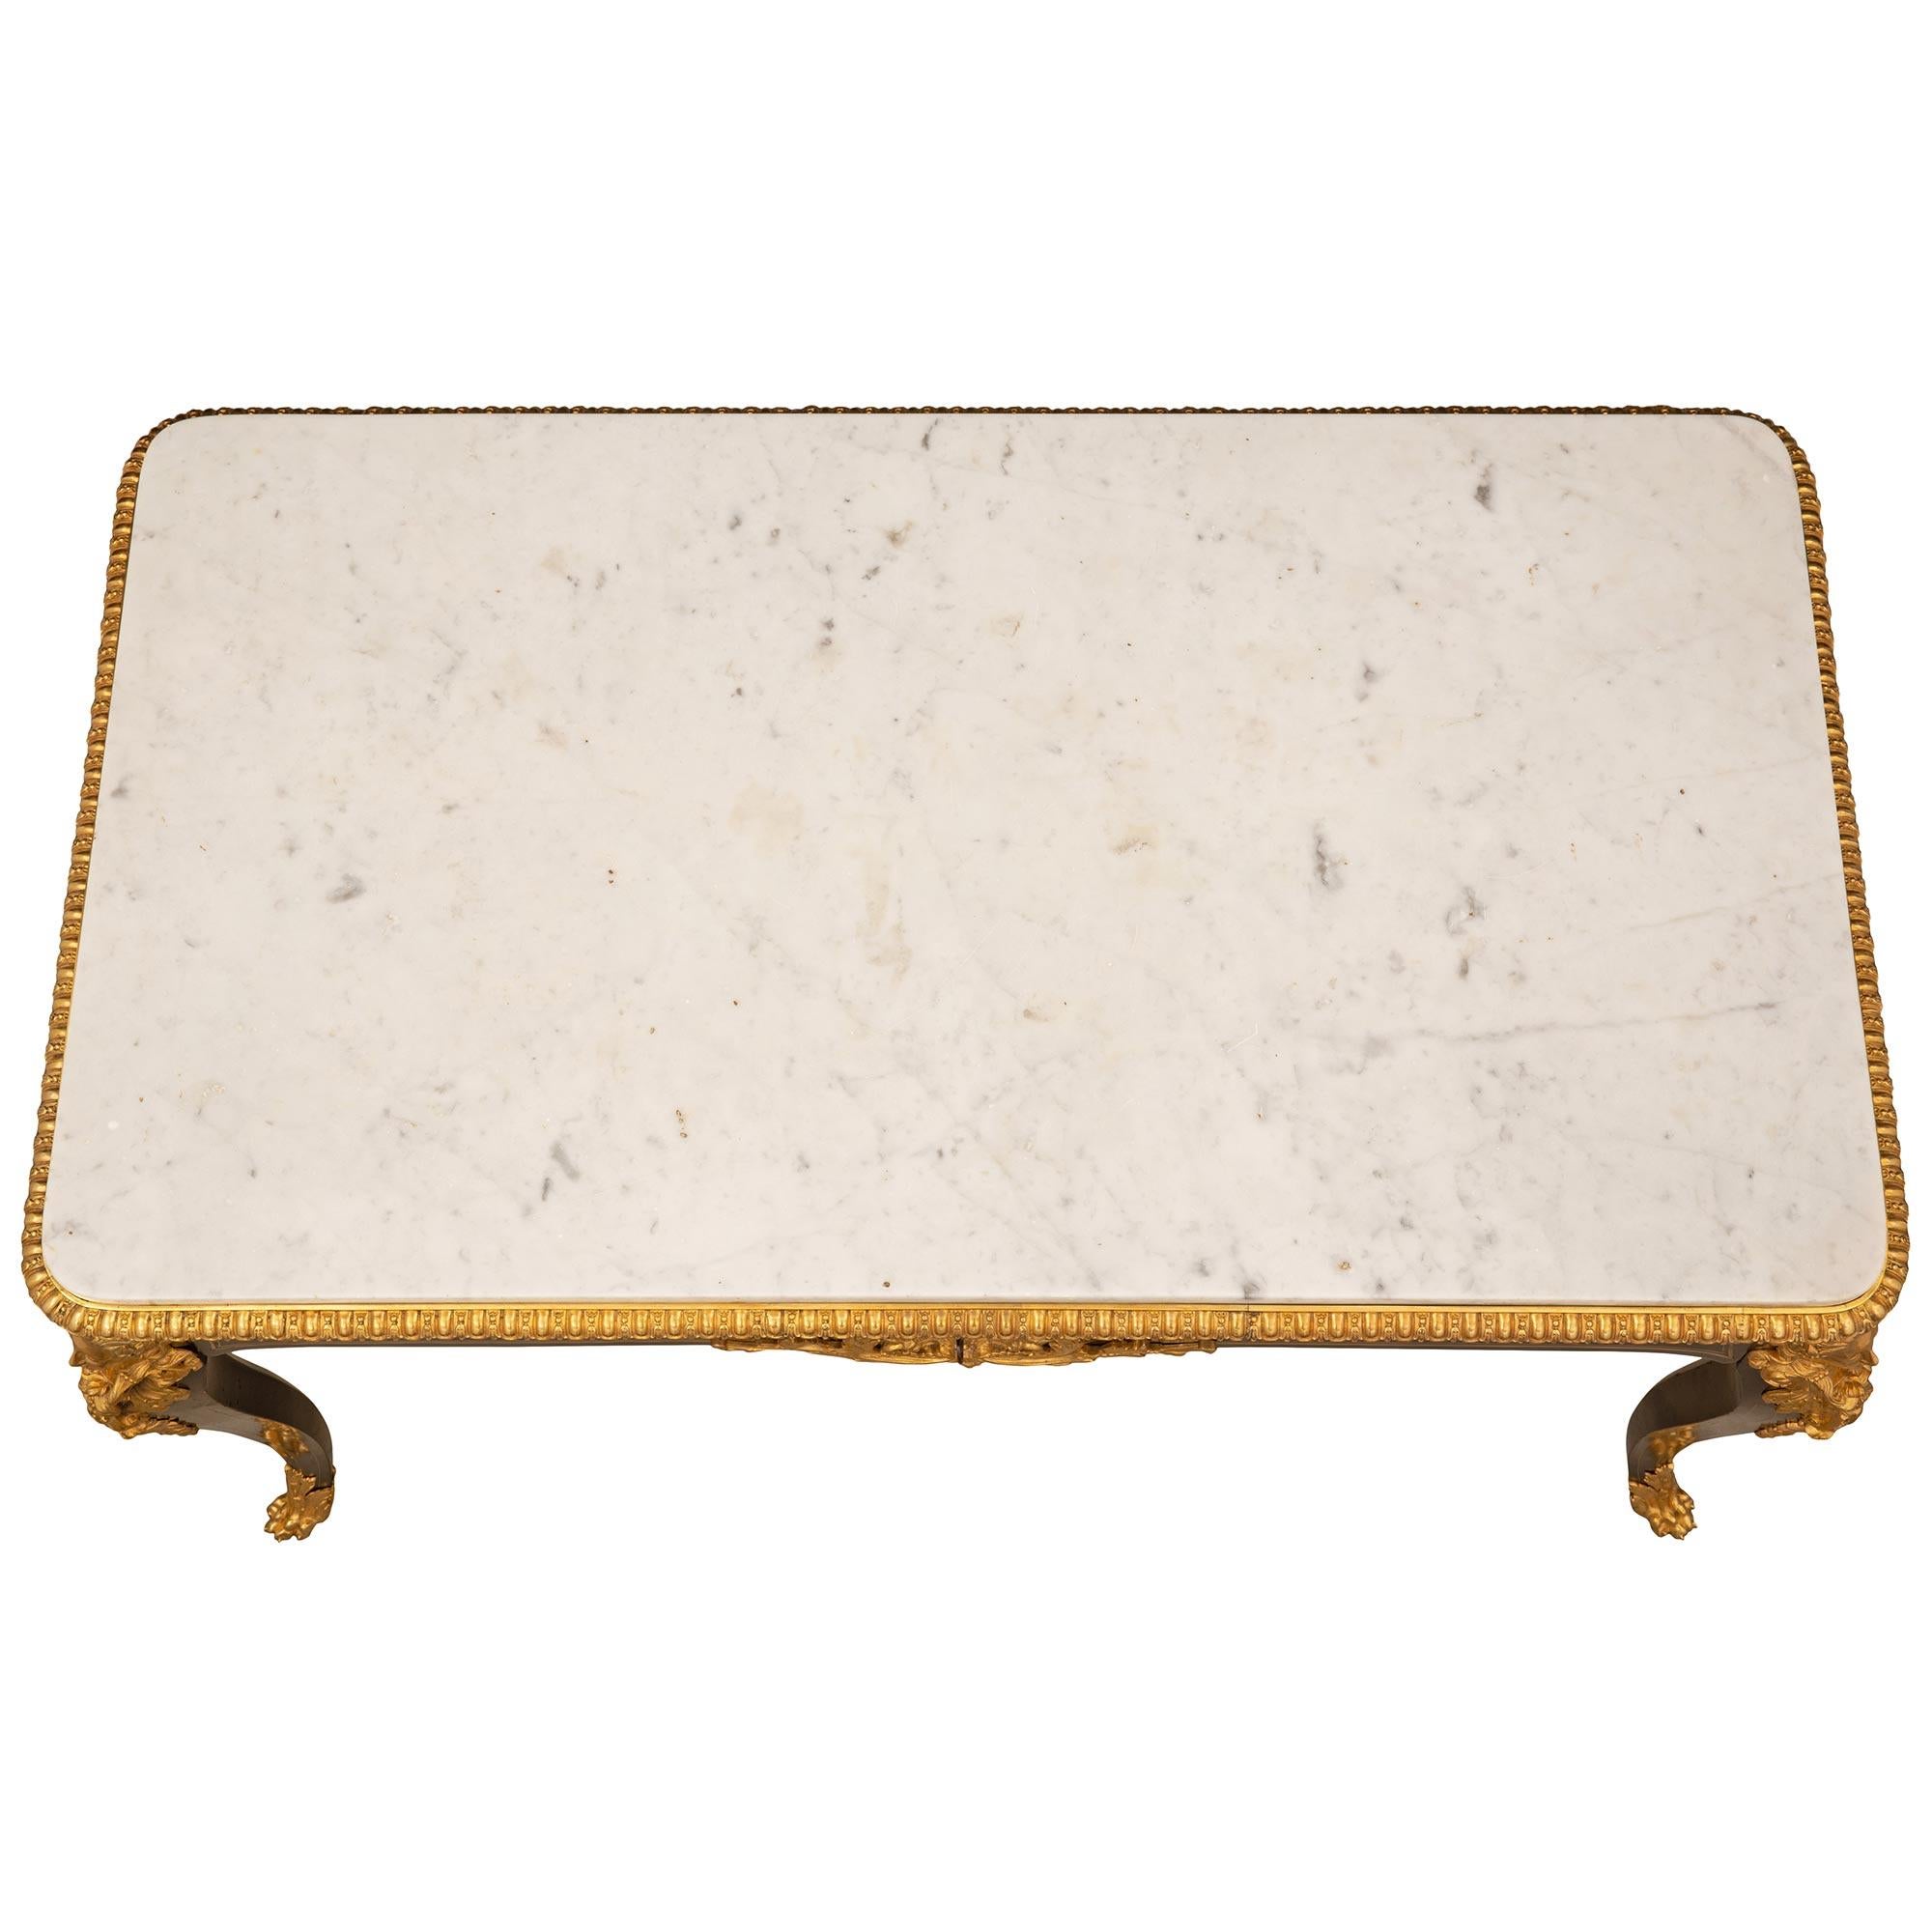 Magnifique table centrale Boulle d'époque Napoléon III du milieu du 19ème siècle. La table repose sur des pieds cabriole avec des sabots en bronze doré. Au sommet de chaque jambe se trouve une monture en bronze doré finement ciselé représentant une